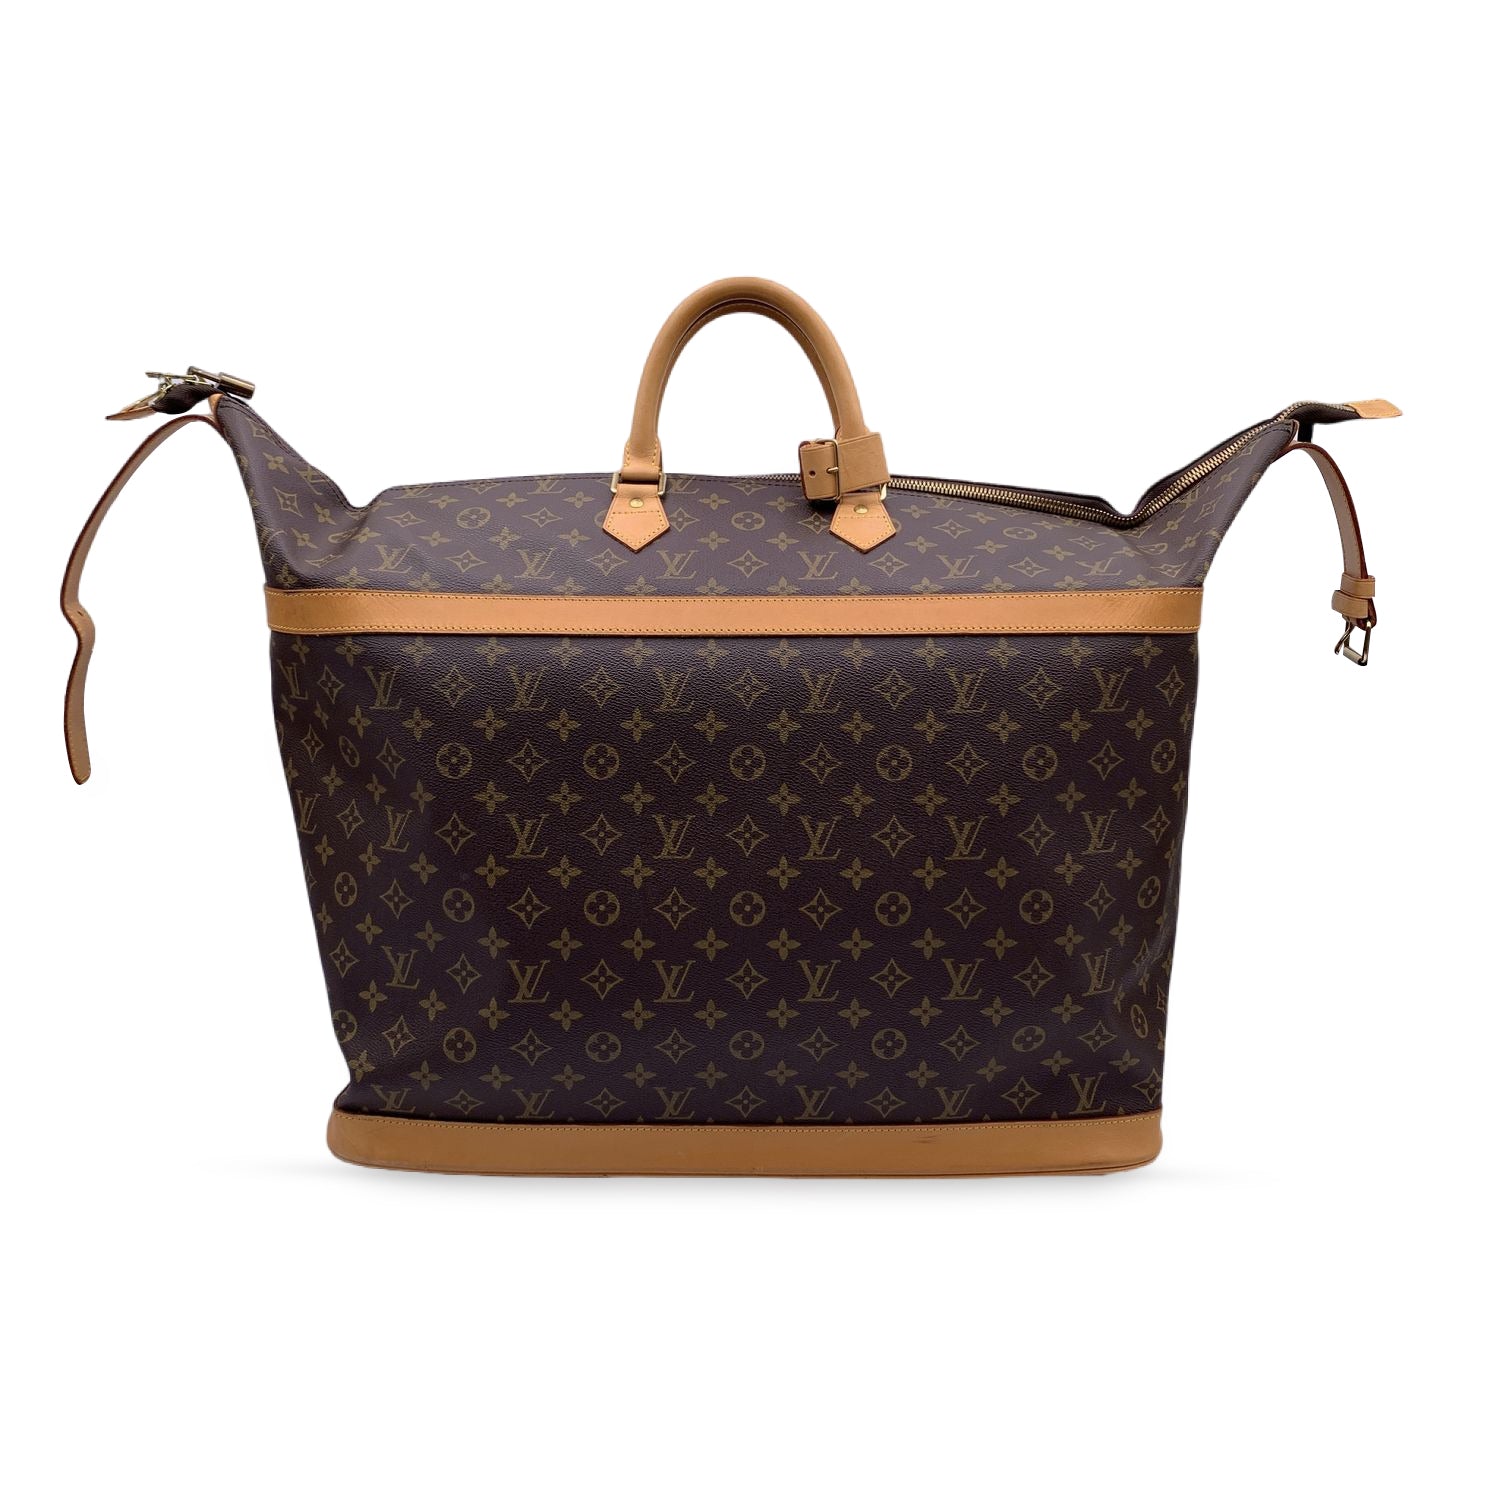 Auth Louis Vuitton Monogram Cruiser Bag 50 M41137 Men,Women,Unisex